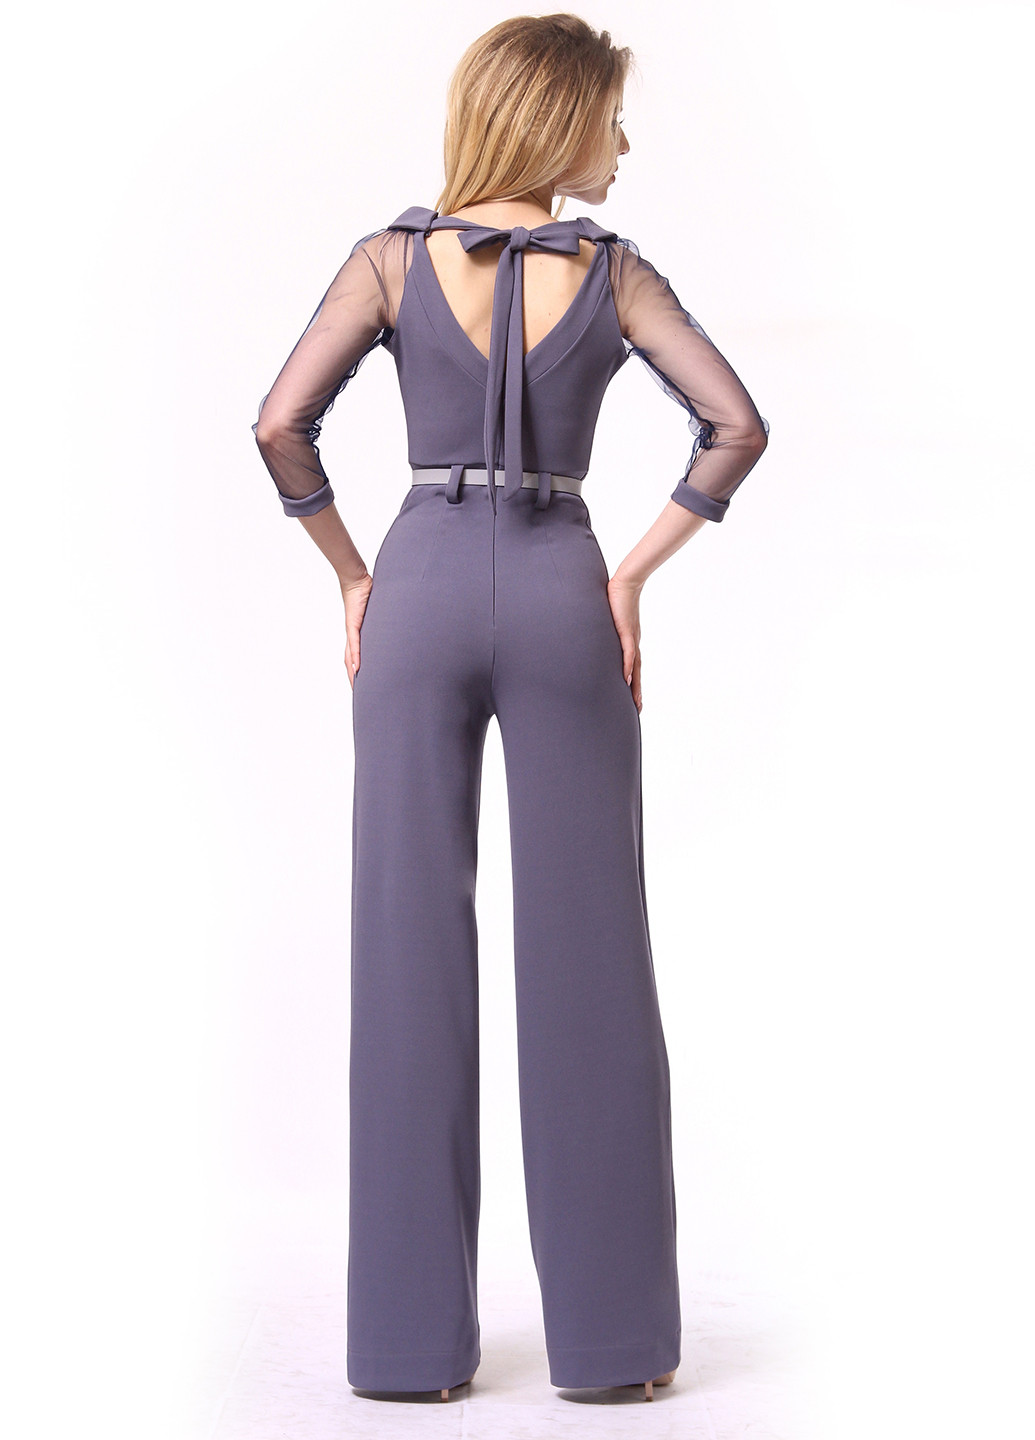 Комбинезон Lila Kass комбинезон-брюки однотонный фиолетовый кэжуал полиэстер